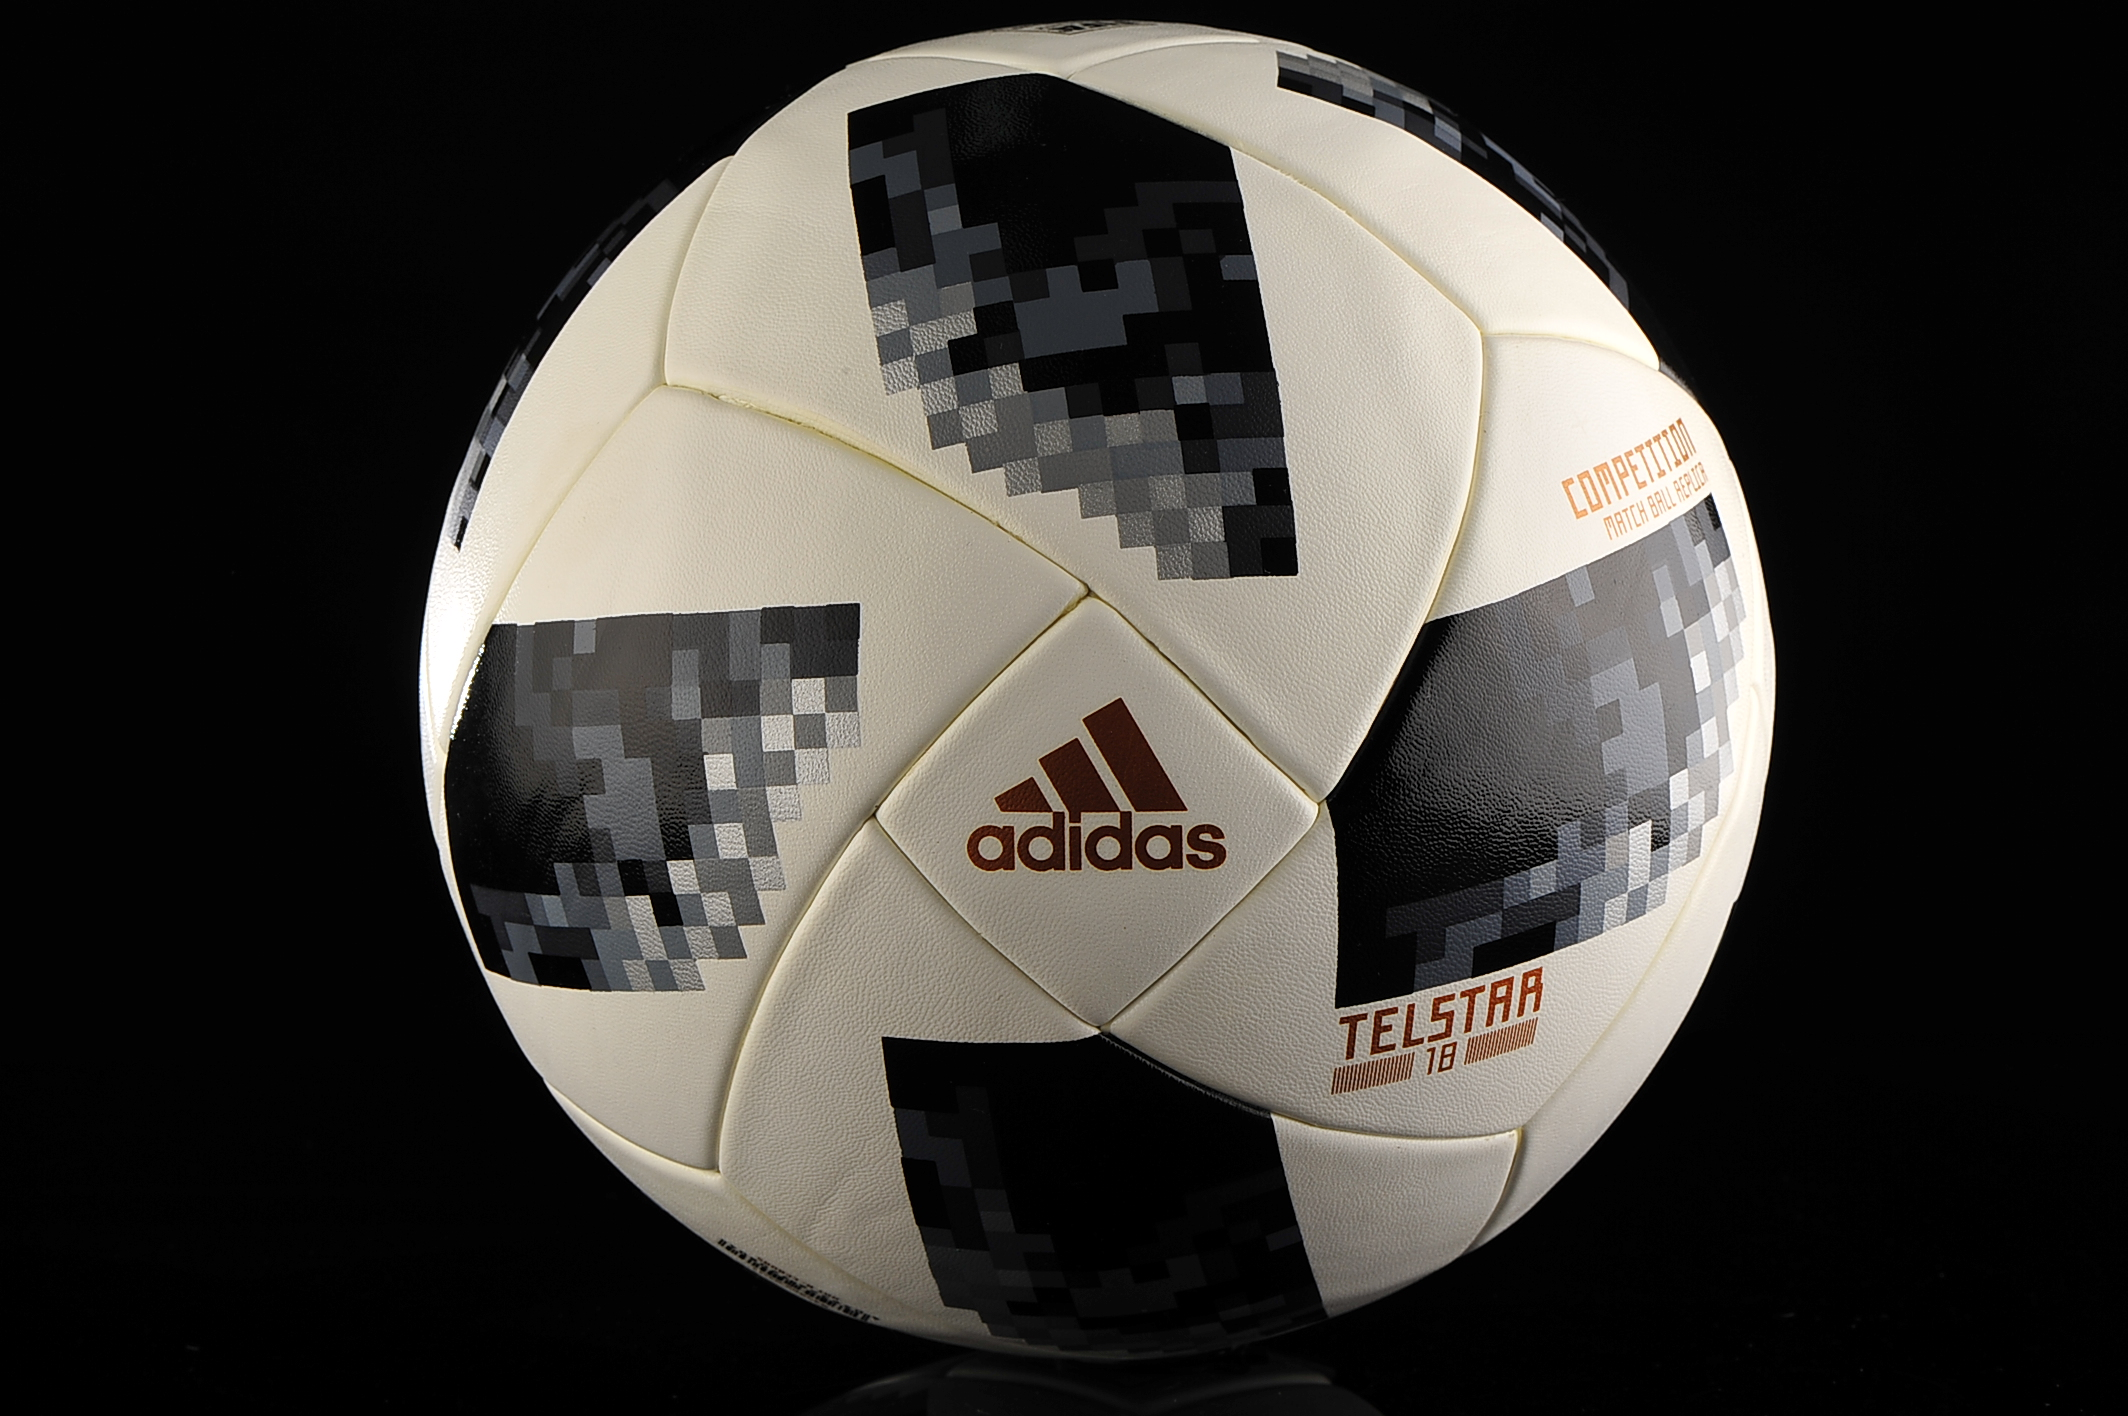 Adidas Fussballe World Cup Telstar 18 Competition Ce8085 Grosse 5 R Gol Com Fussballschuhe Und Fussballbekleidung Gunstig Kaufen